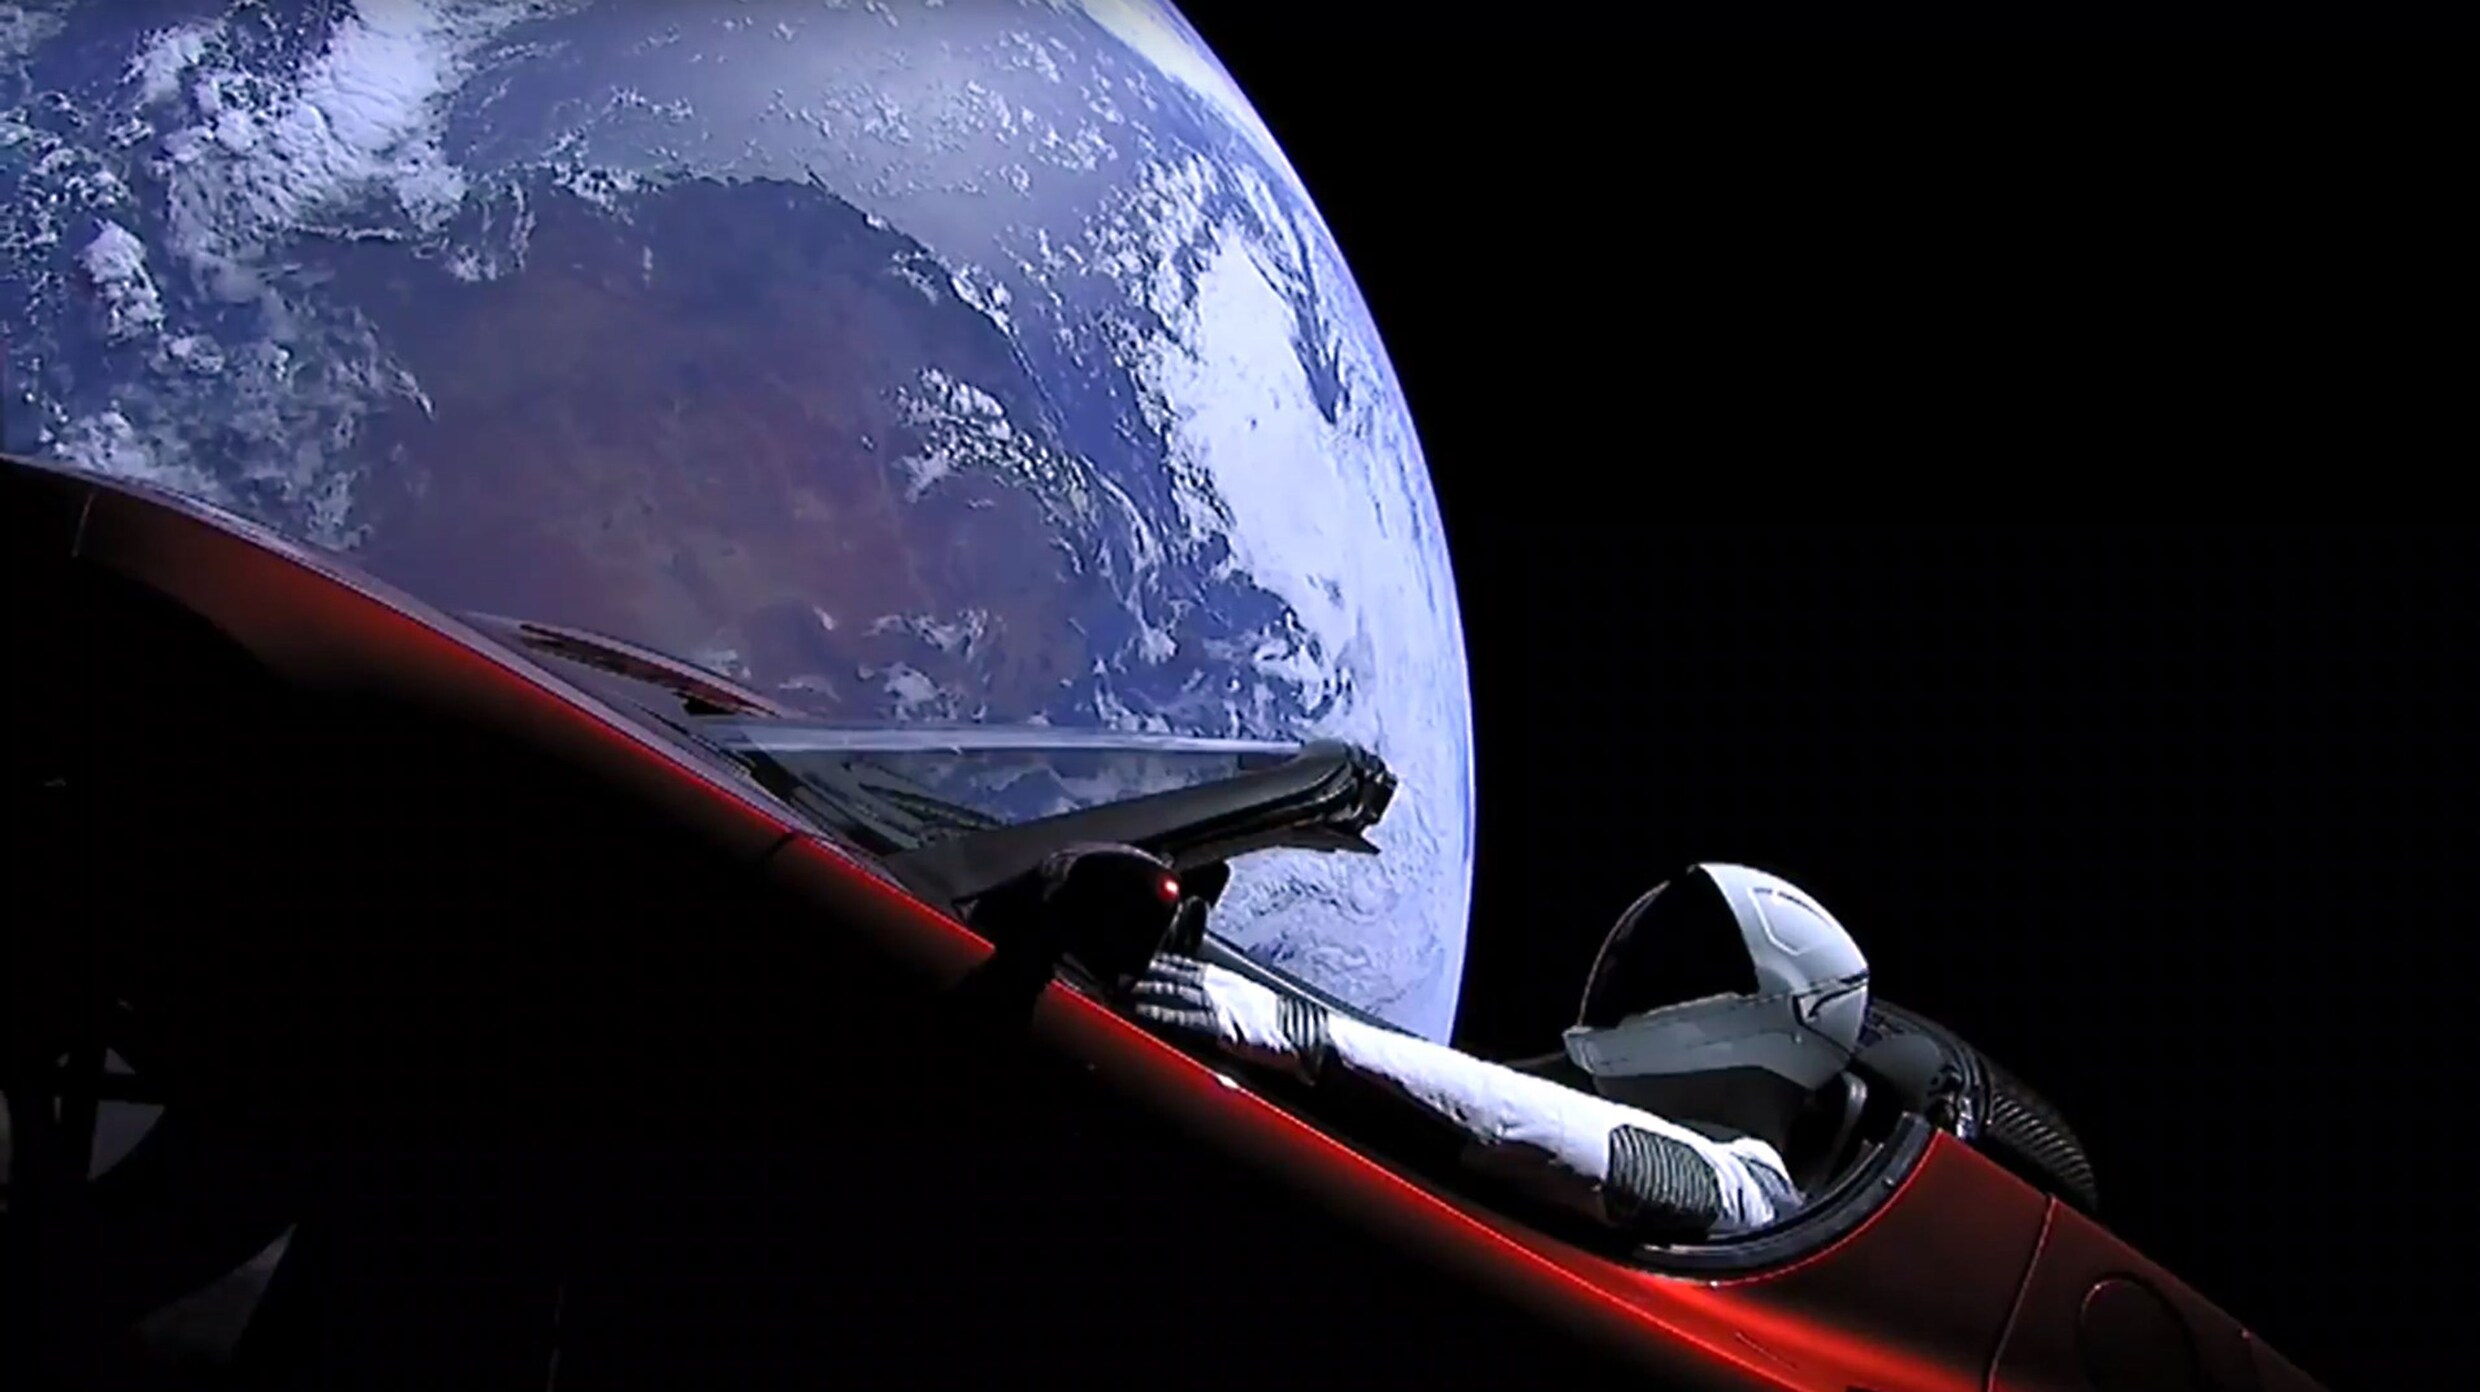 Starman is intussen Mars al gepasseerd met zijn Tesla